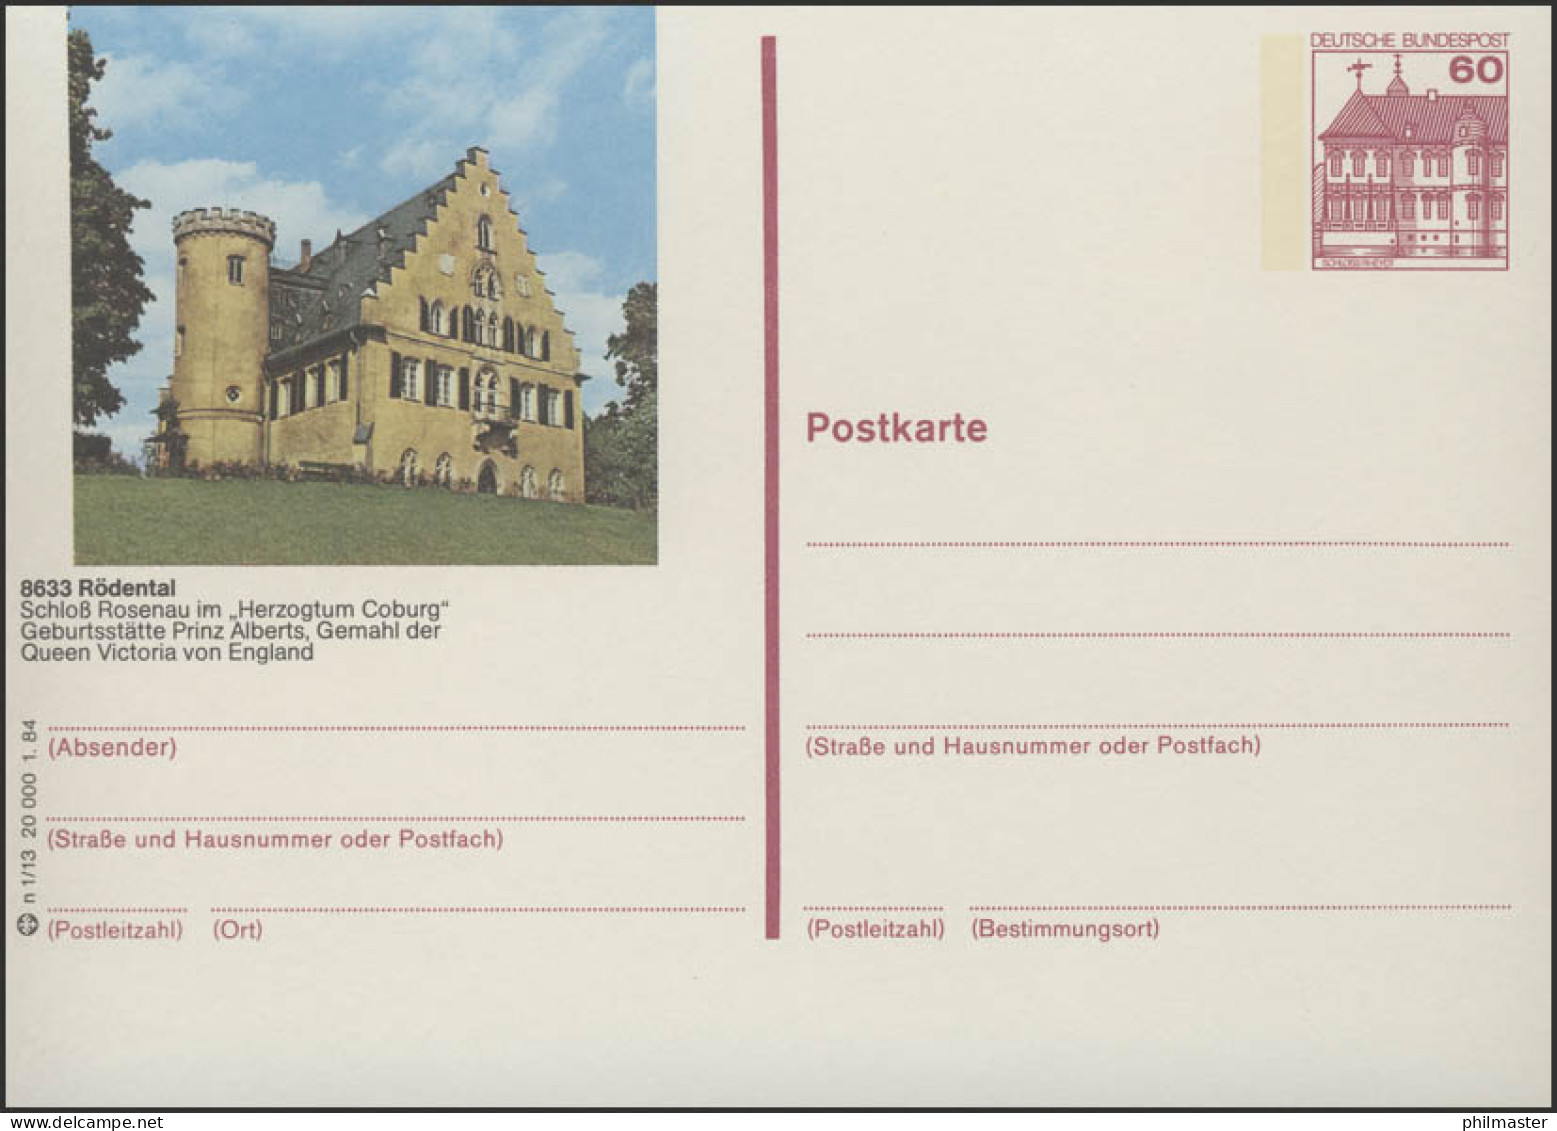 P138-n1/013 8633 Rödental - Schloß Rosenau ** - Illustrated Postcards - Mint